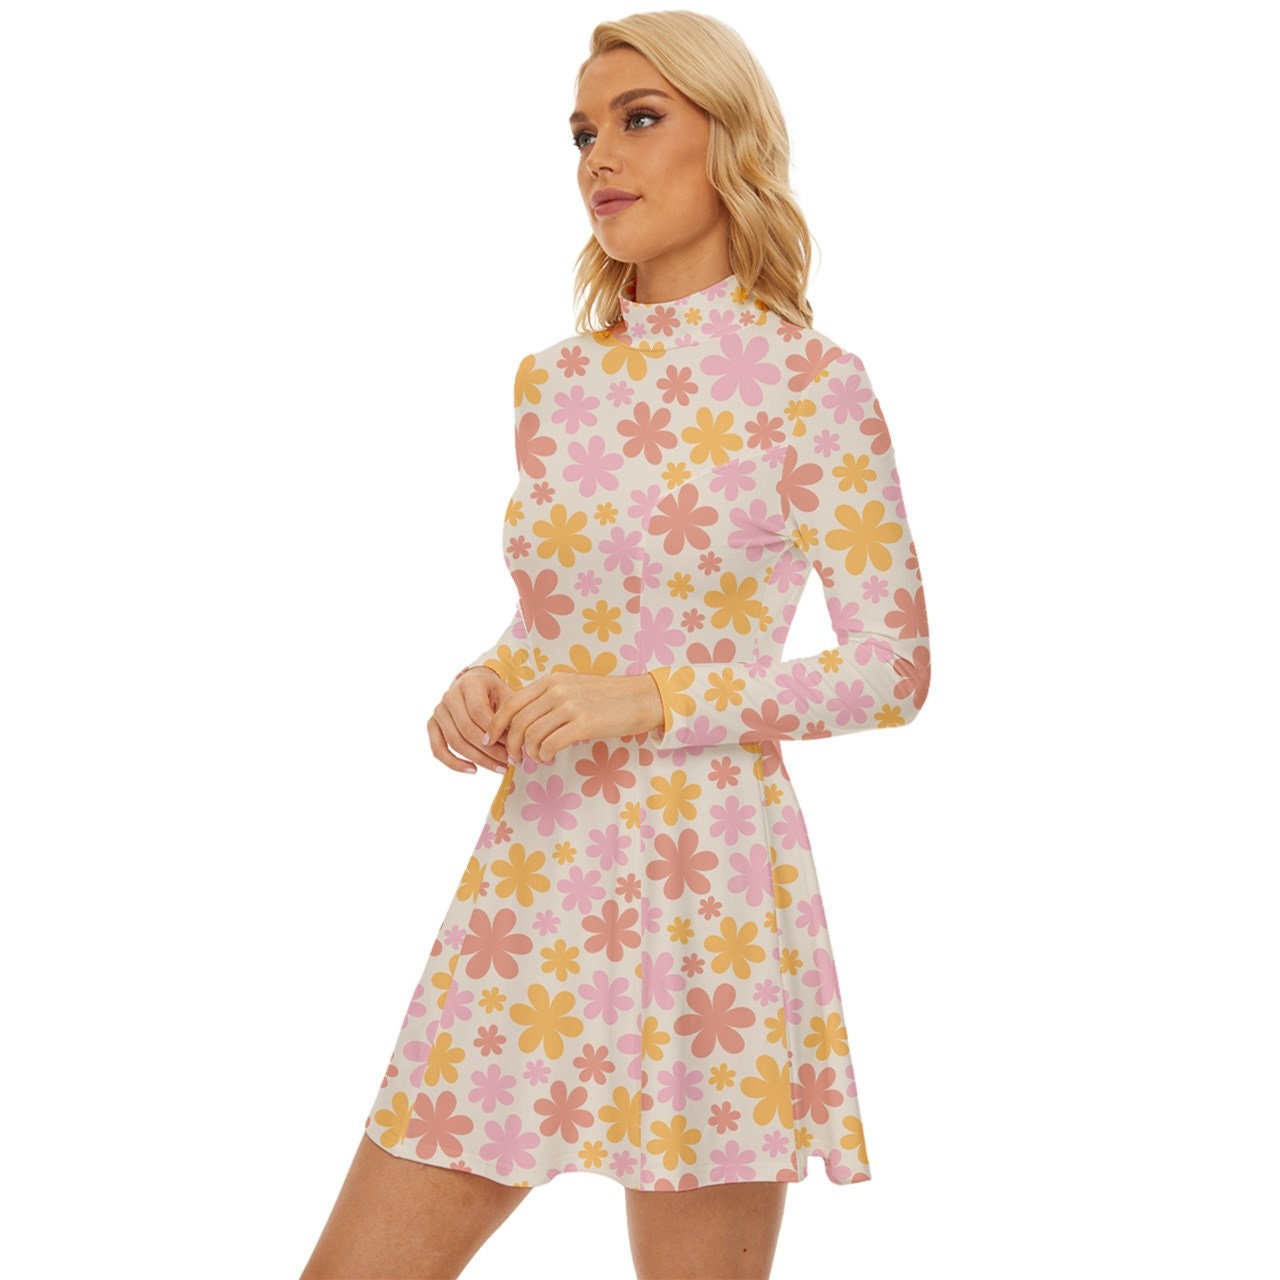 Style vestimentaire des années 60, robe Mod, robe Mod rose, robe col tortue, robe GOGO, robe de style années 60, mini robe des années 60, robe florale rose, robe rétro